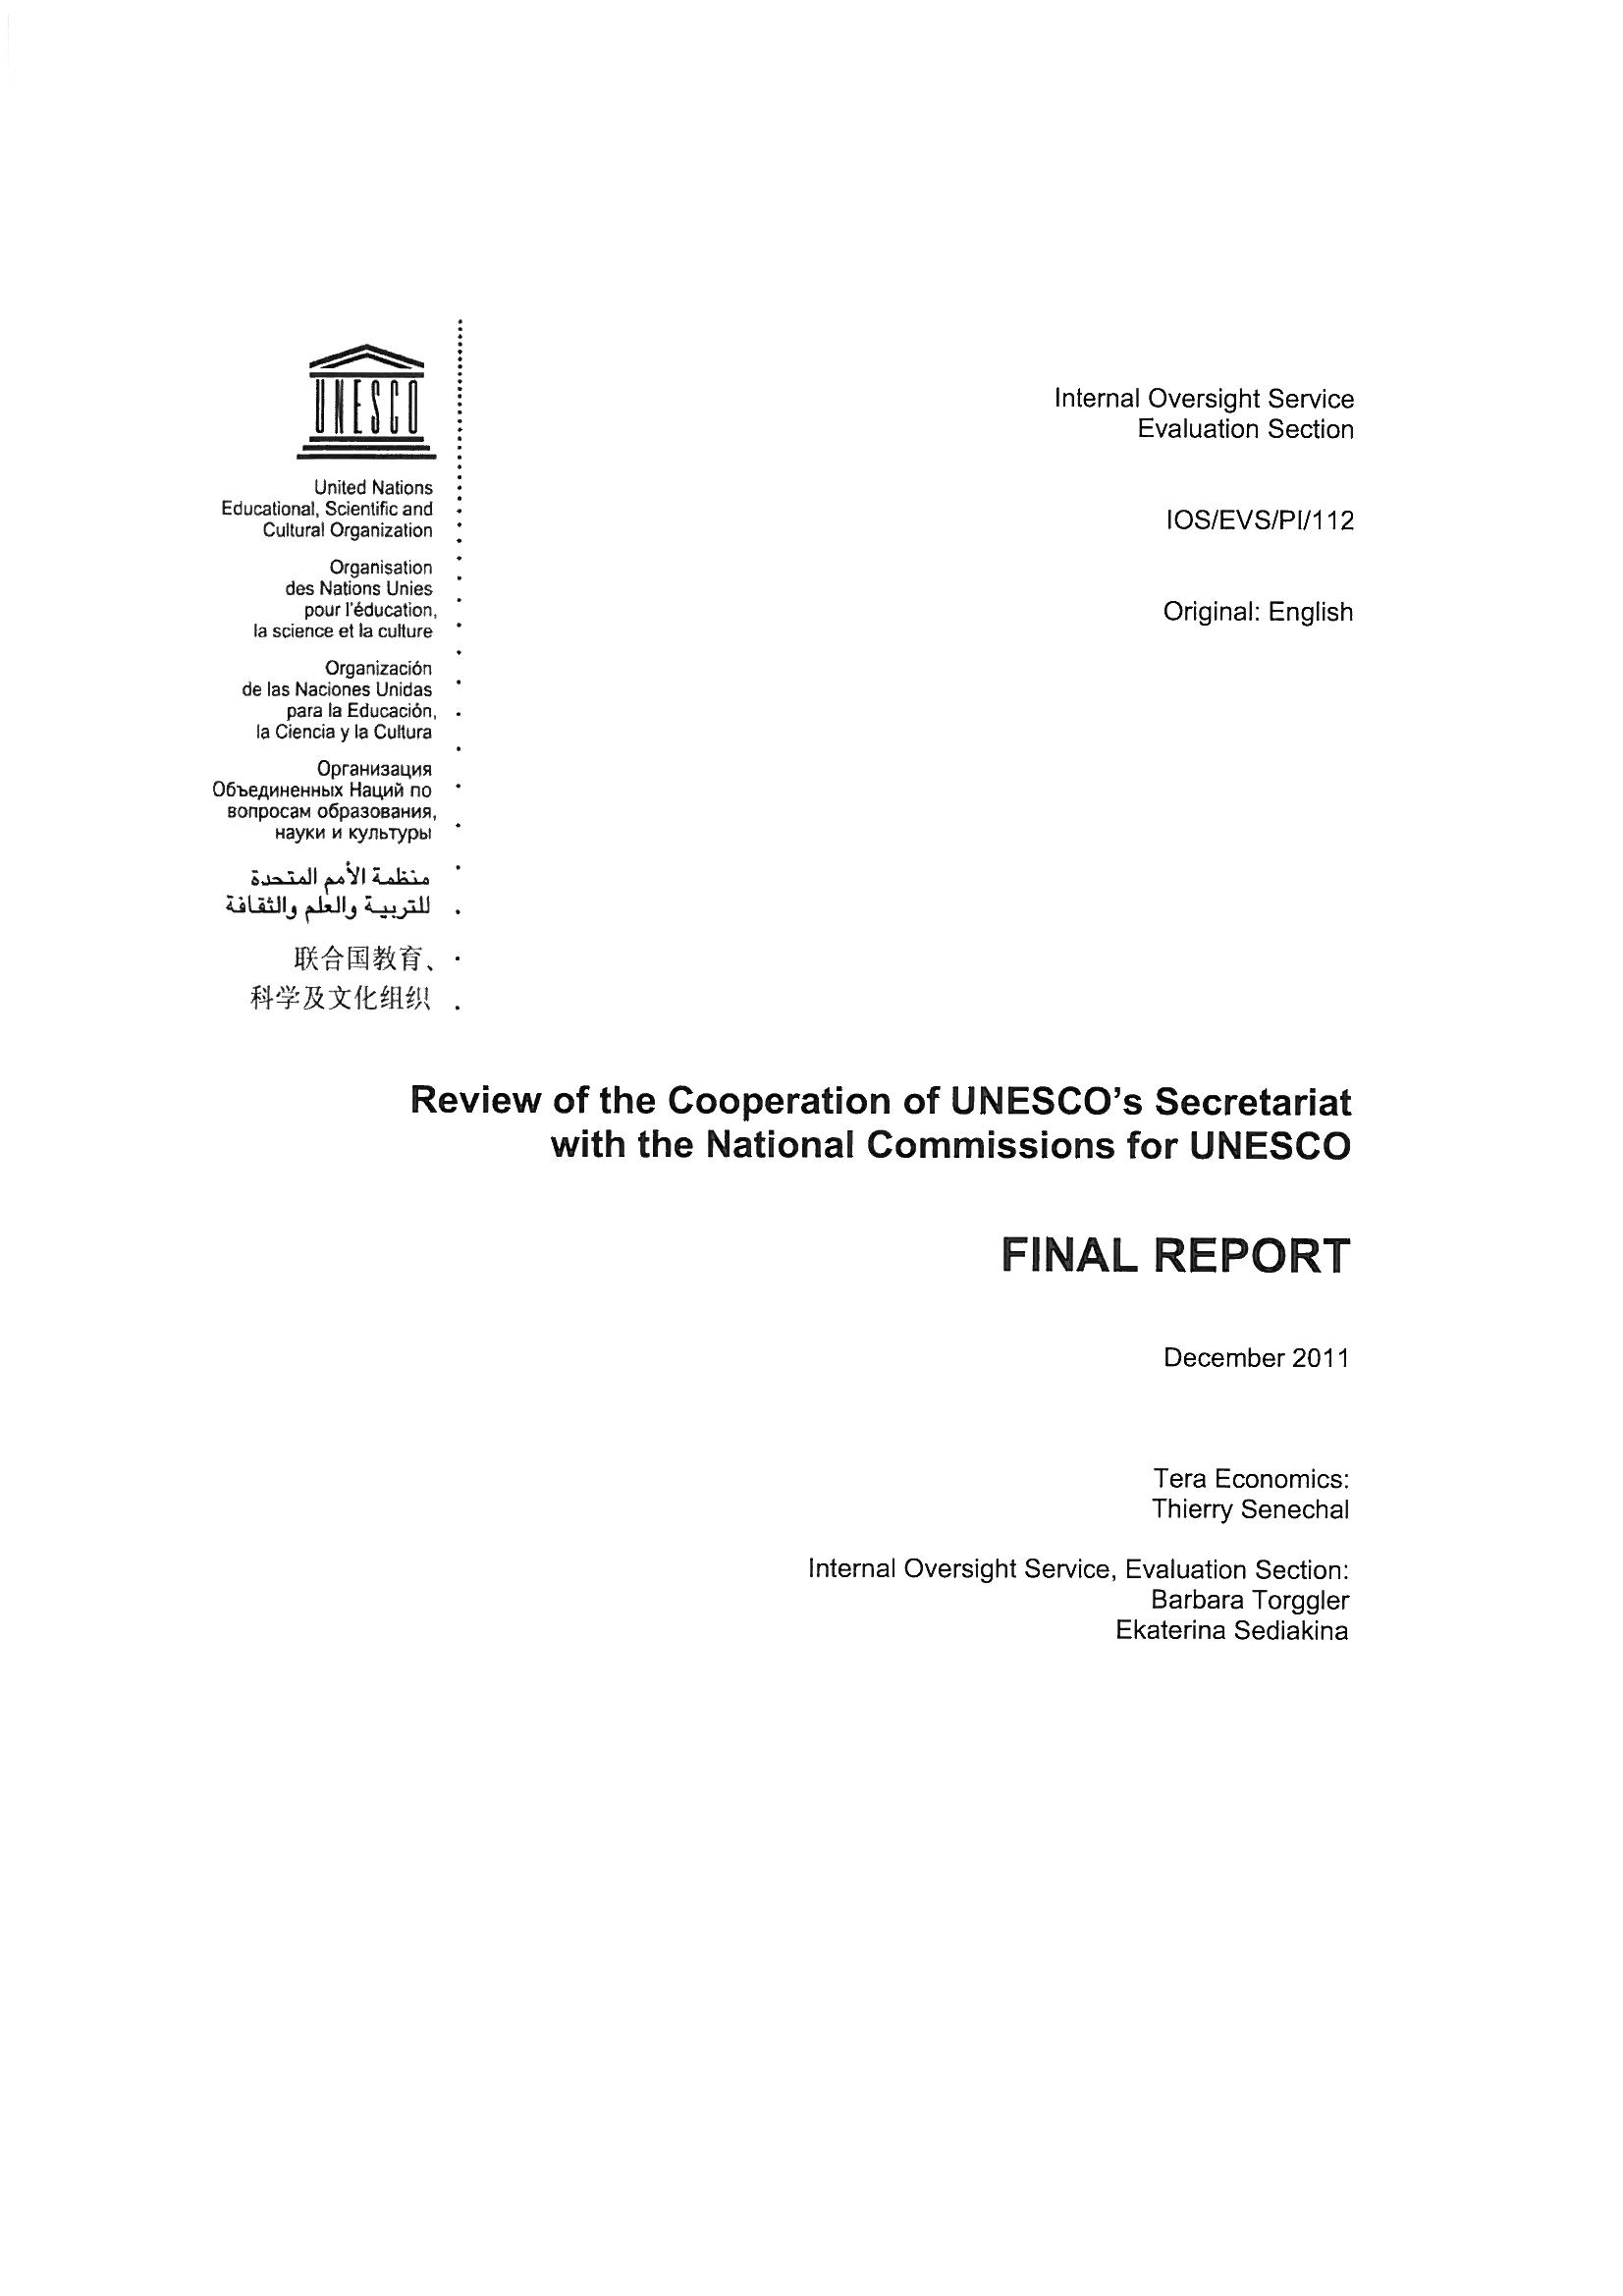 Rapport final sur l'examen de la coopration du Secrtariat avec les commissions nationales